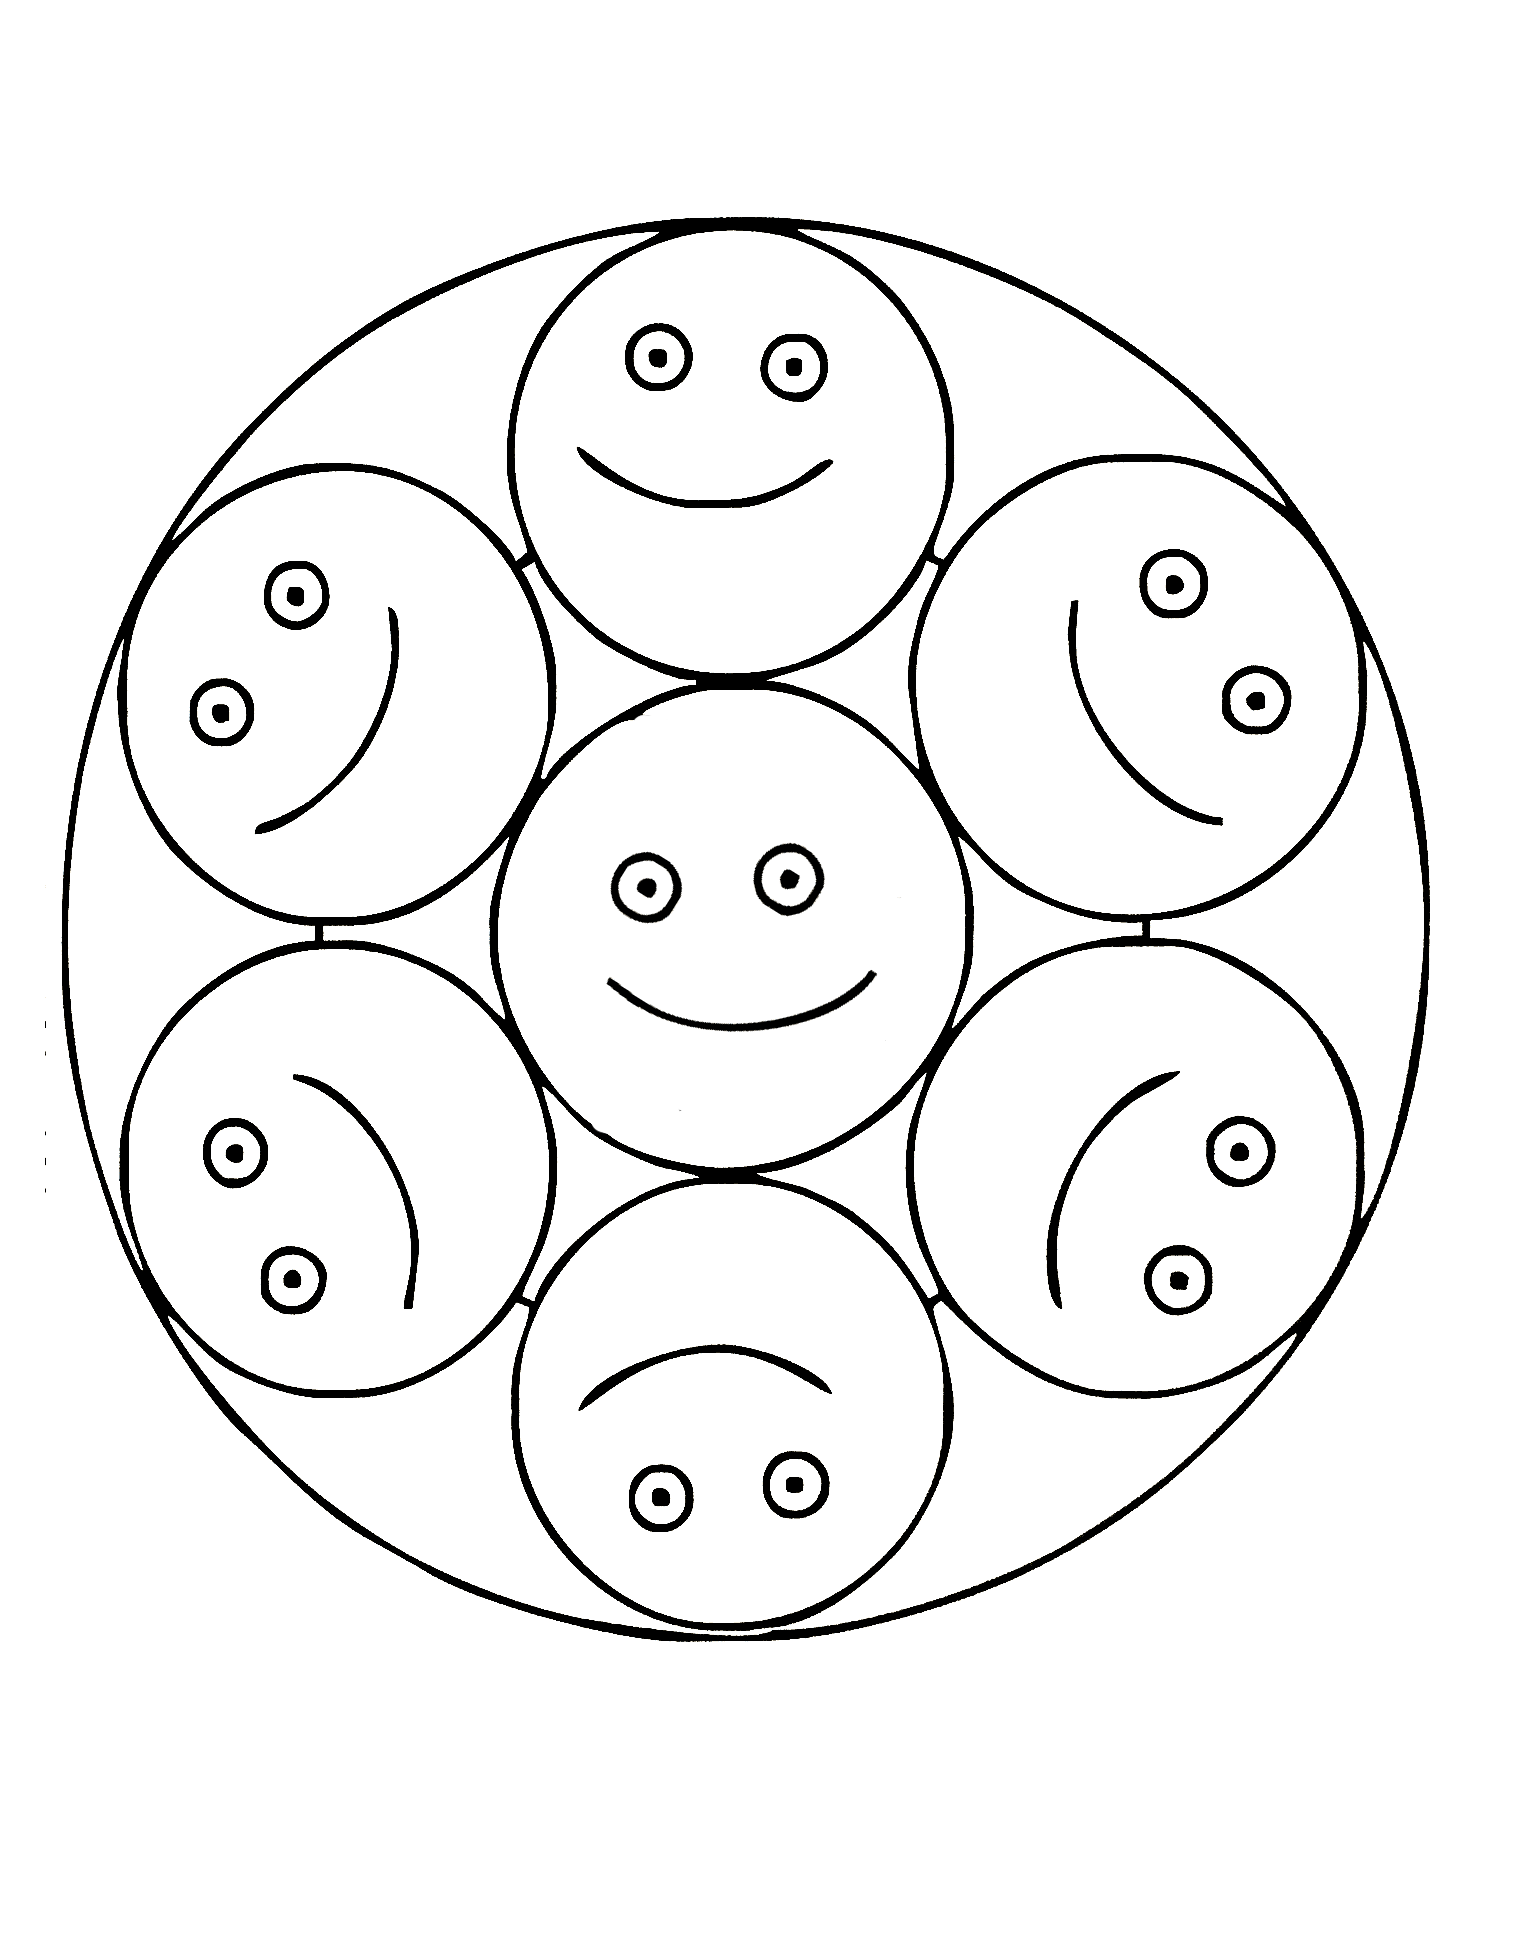 Mandala muy sencillo con smileys